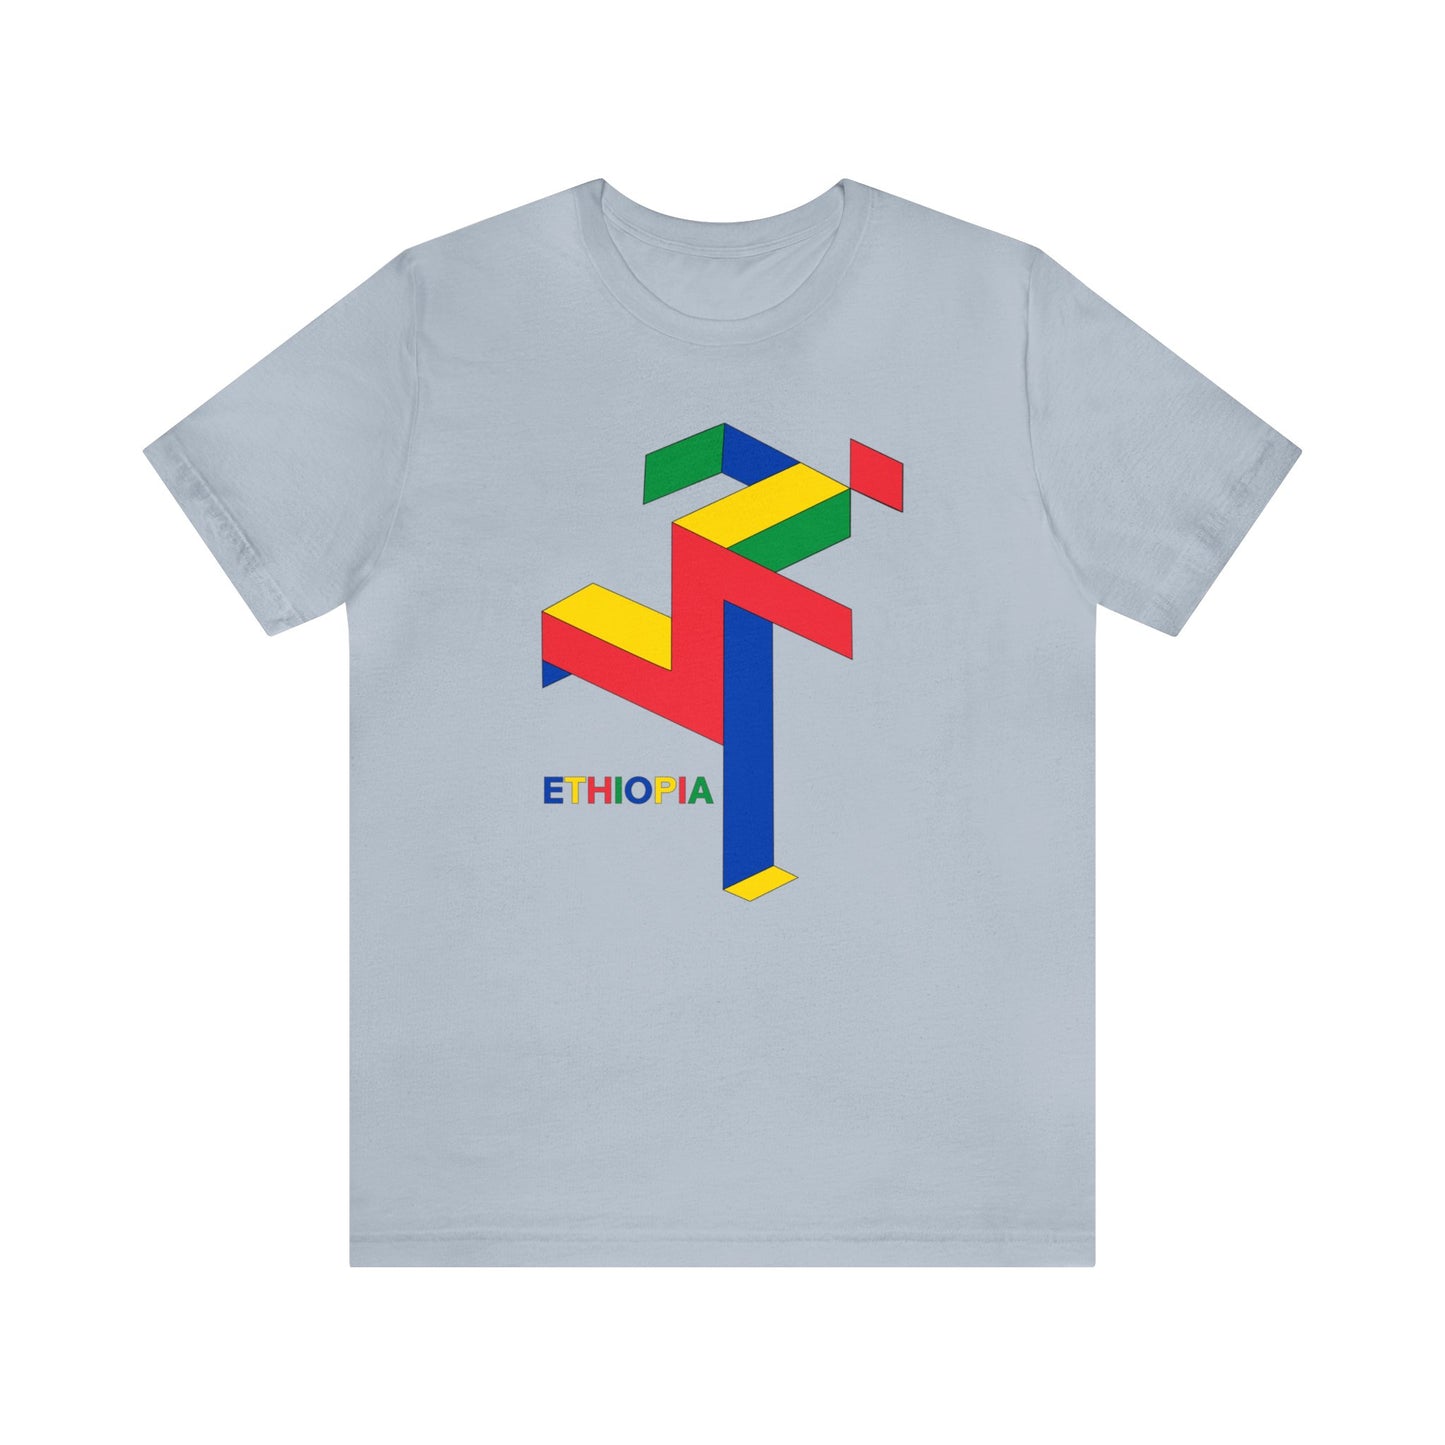 Ethiopian Runner - Unisex T-Shirt